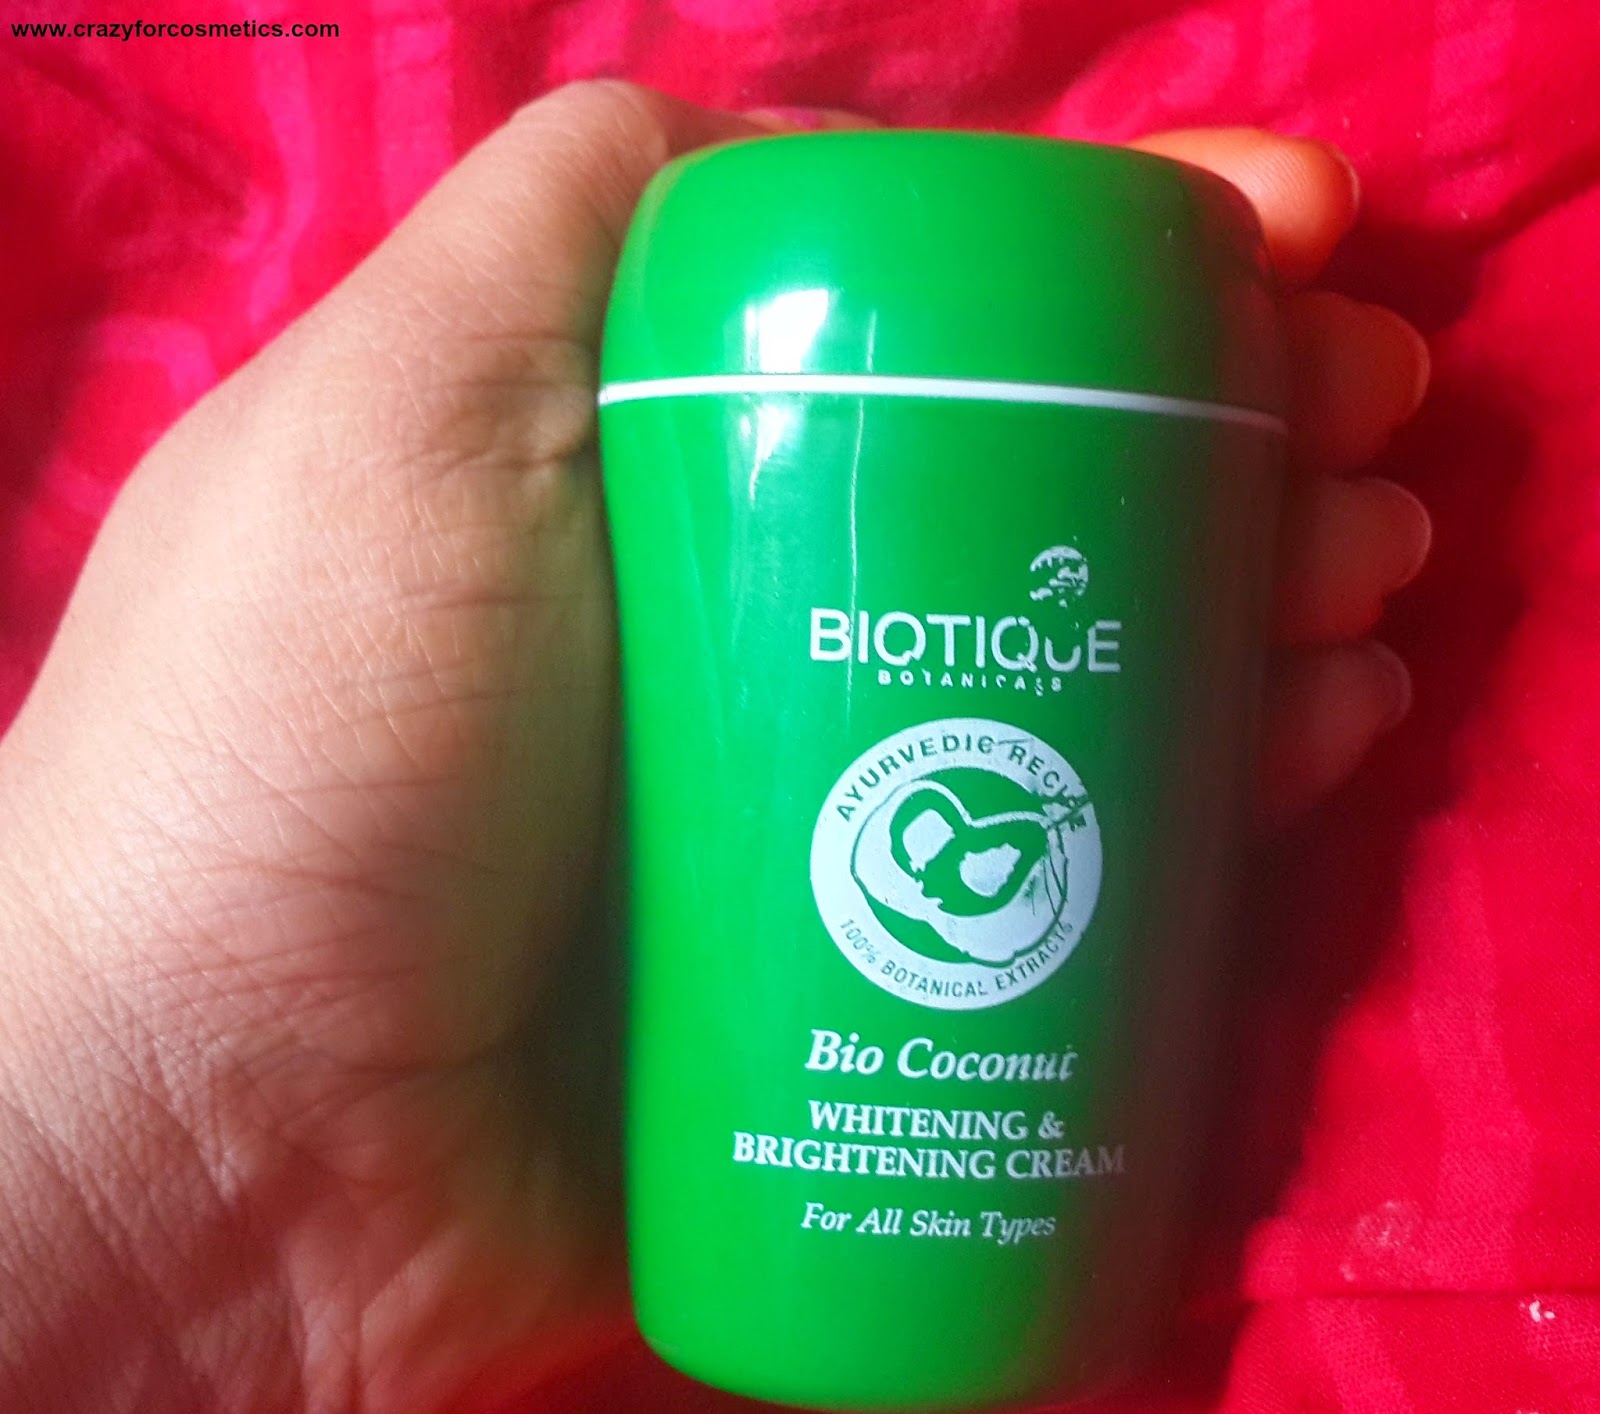 Biotique Bio Coconut Whitening & Brightening cream-Biotique Bio Coconut Whitening & Brightening cream India-Biotique Bio Coconut Whitening & Brightening cream usage-Biotique products-Ayurvedic skincare products India